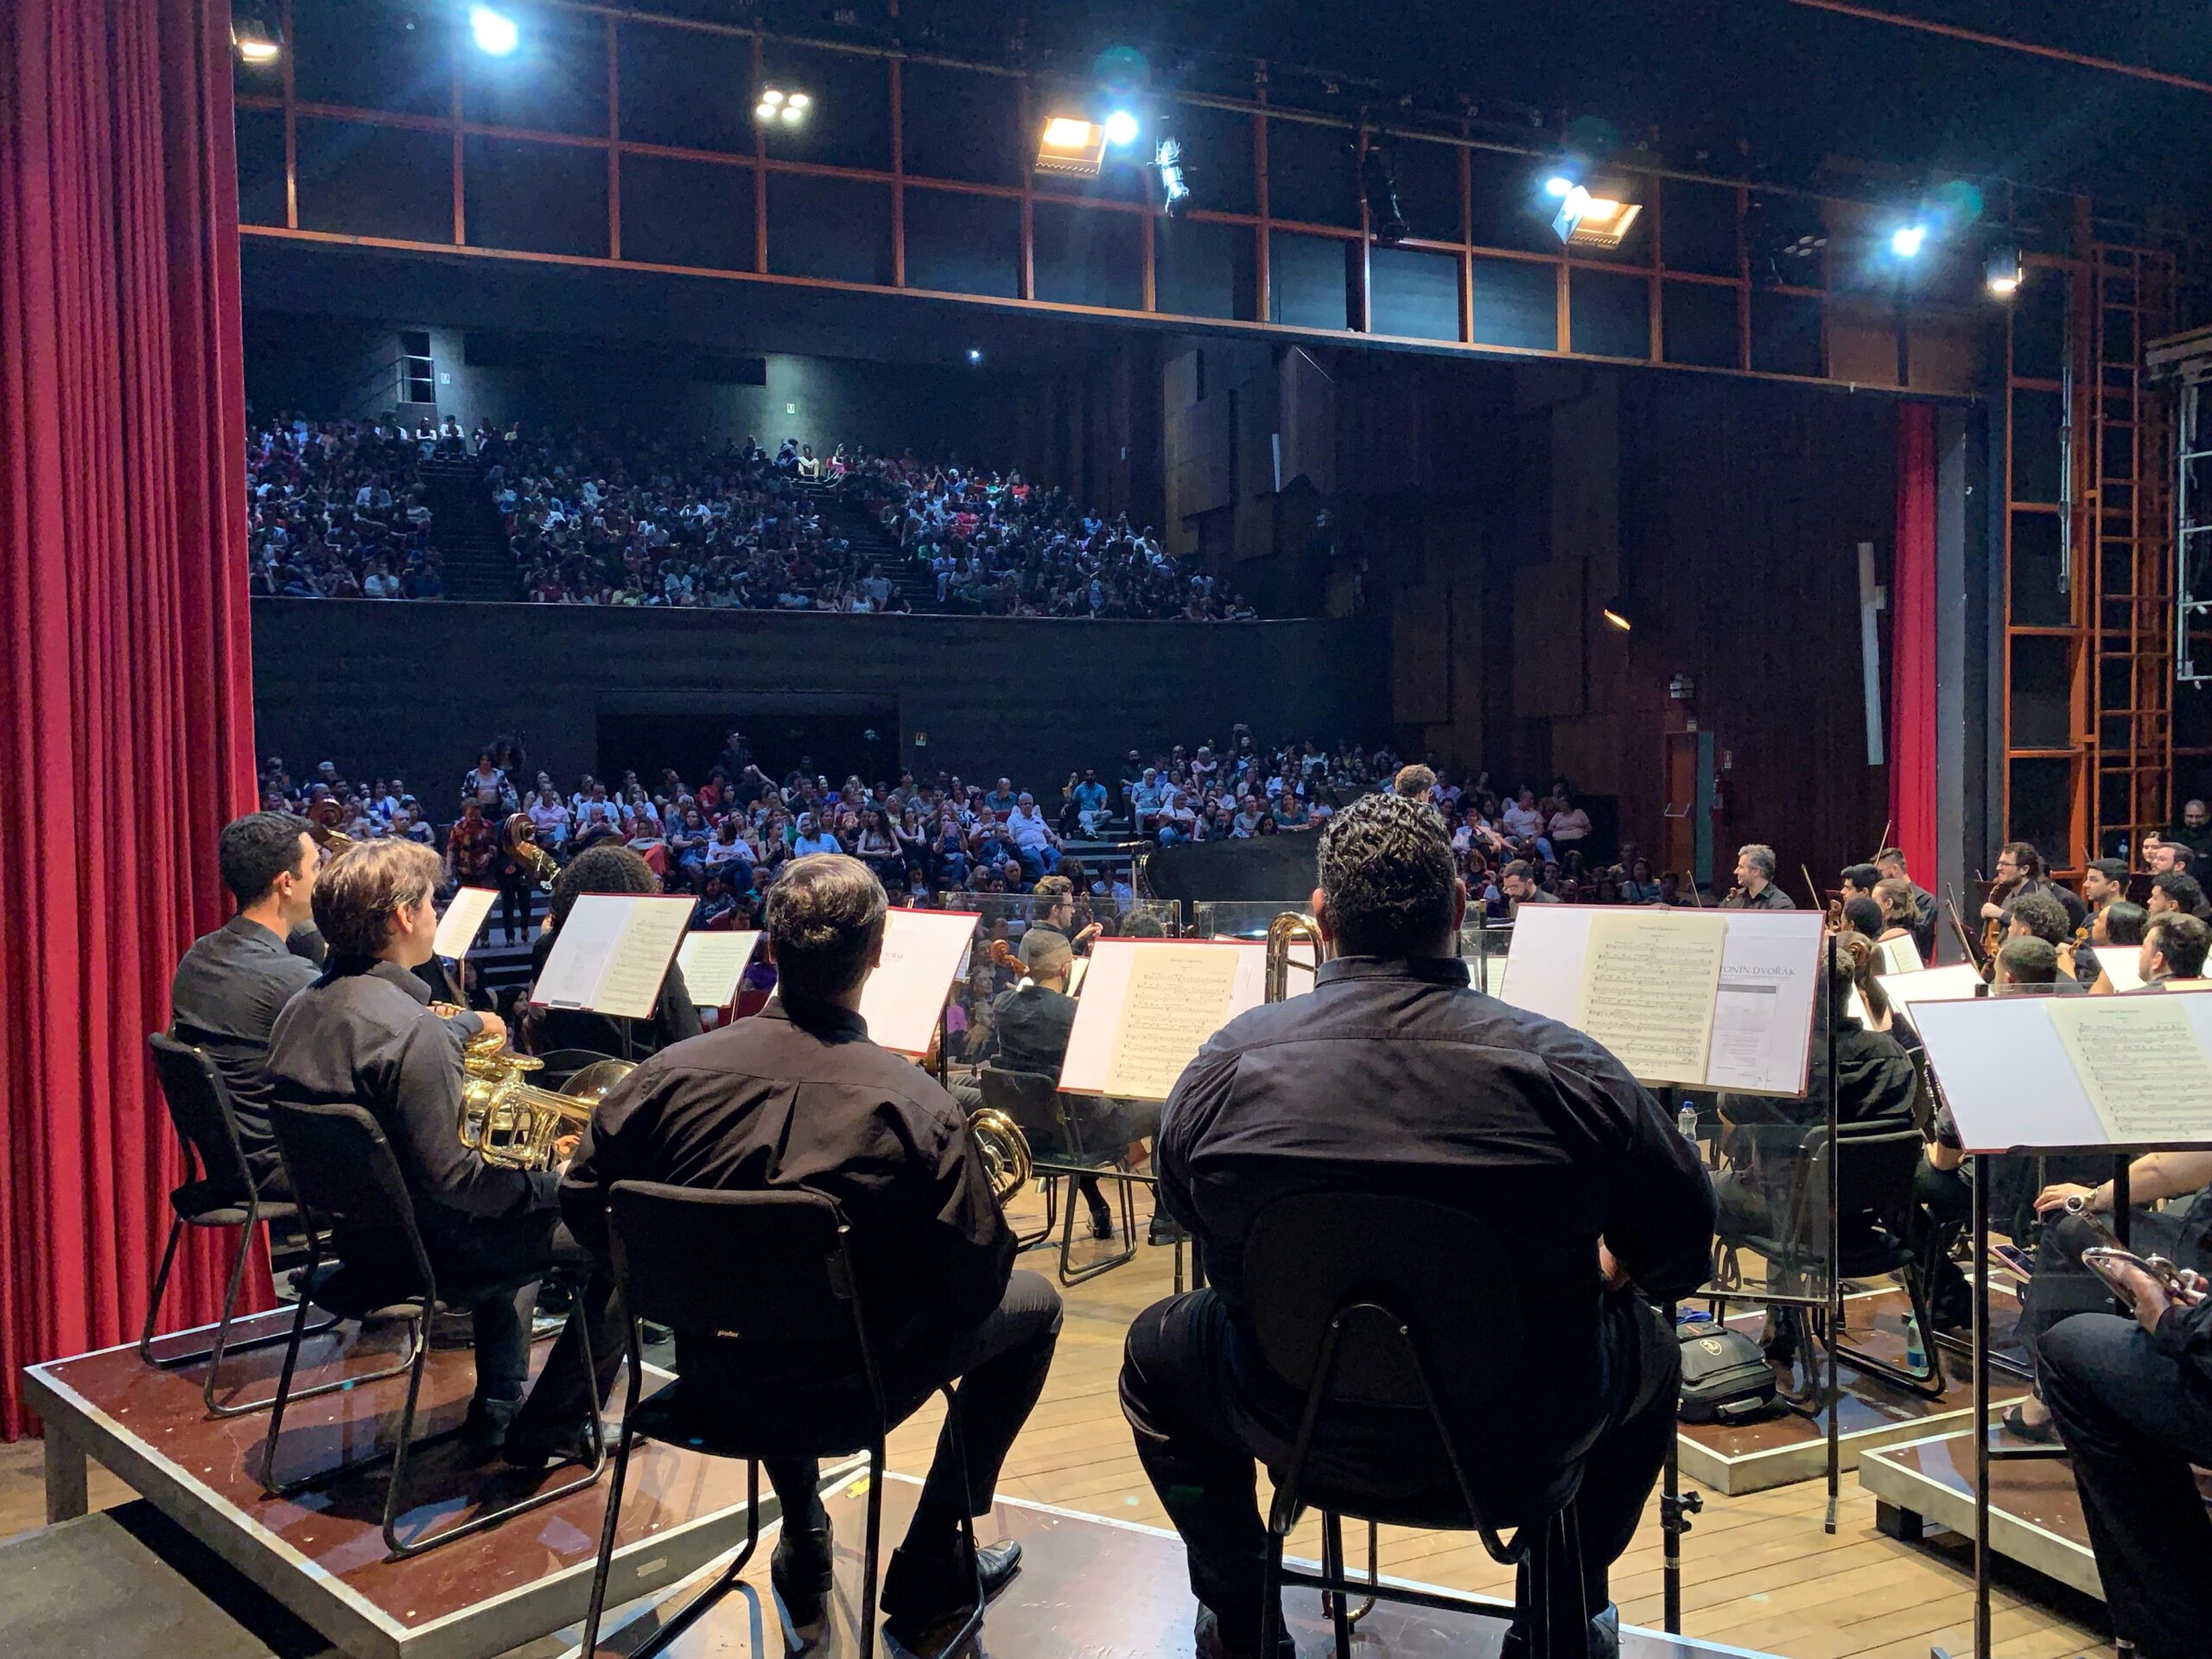 Teatro Goiânia recebe Orquestra Filarmônica de Goiás nesta quinta-feira